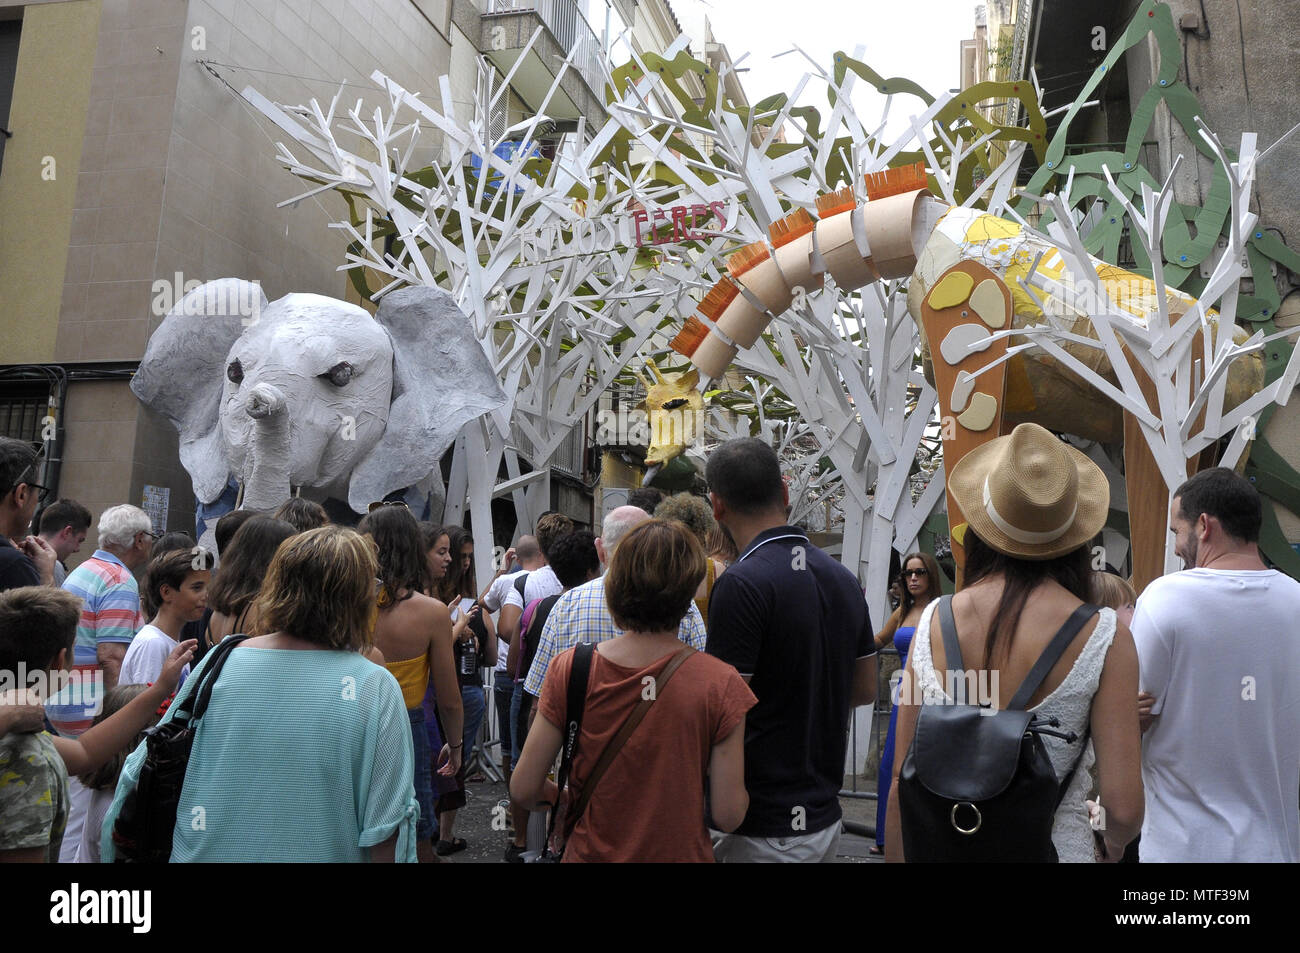 STRETS DECORETED durante il quartiere Gracia Summer Festival di Barcellona, persone che visitano le varie strade decorazioni intorno a Gracia fest. Foto: Rosmi Foto Stock